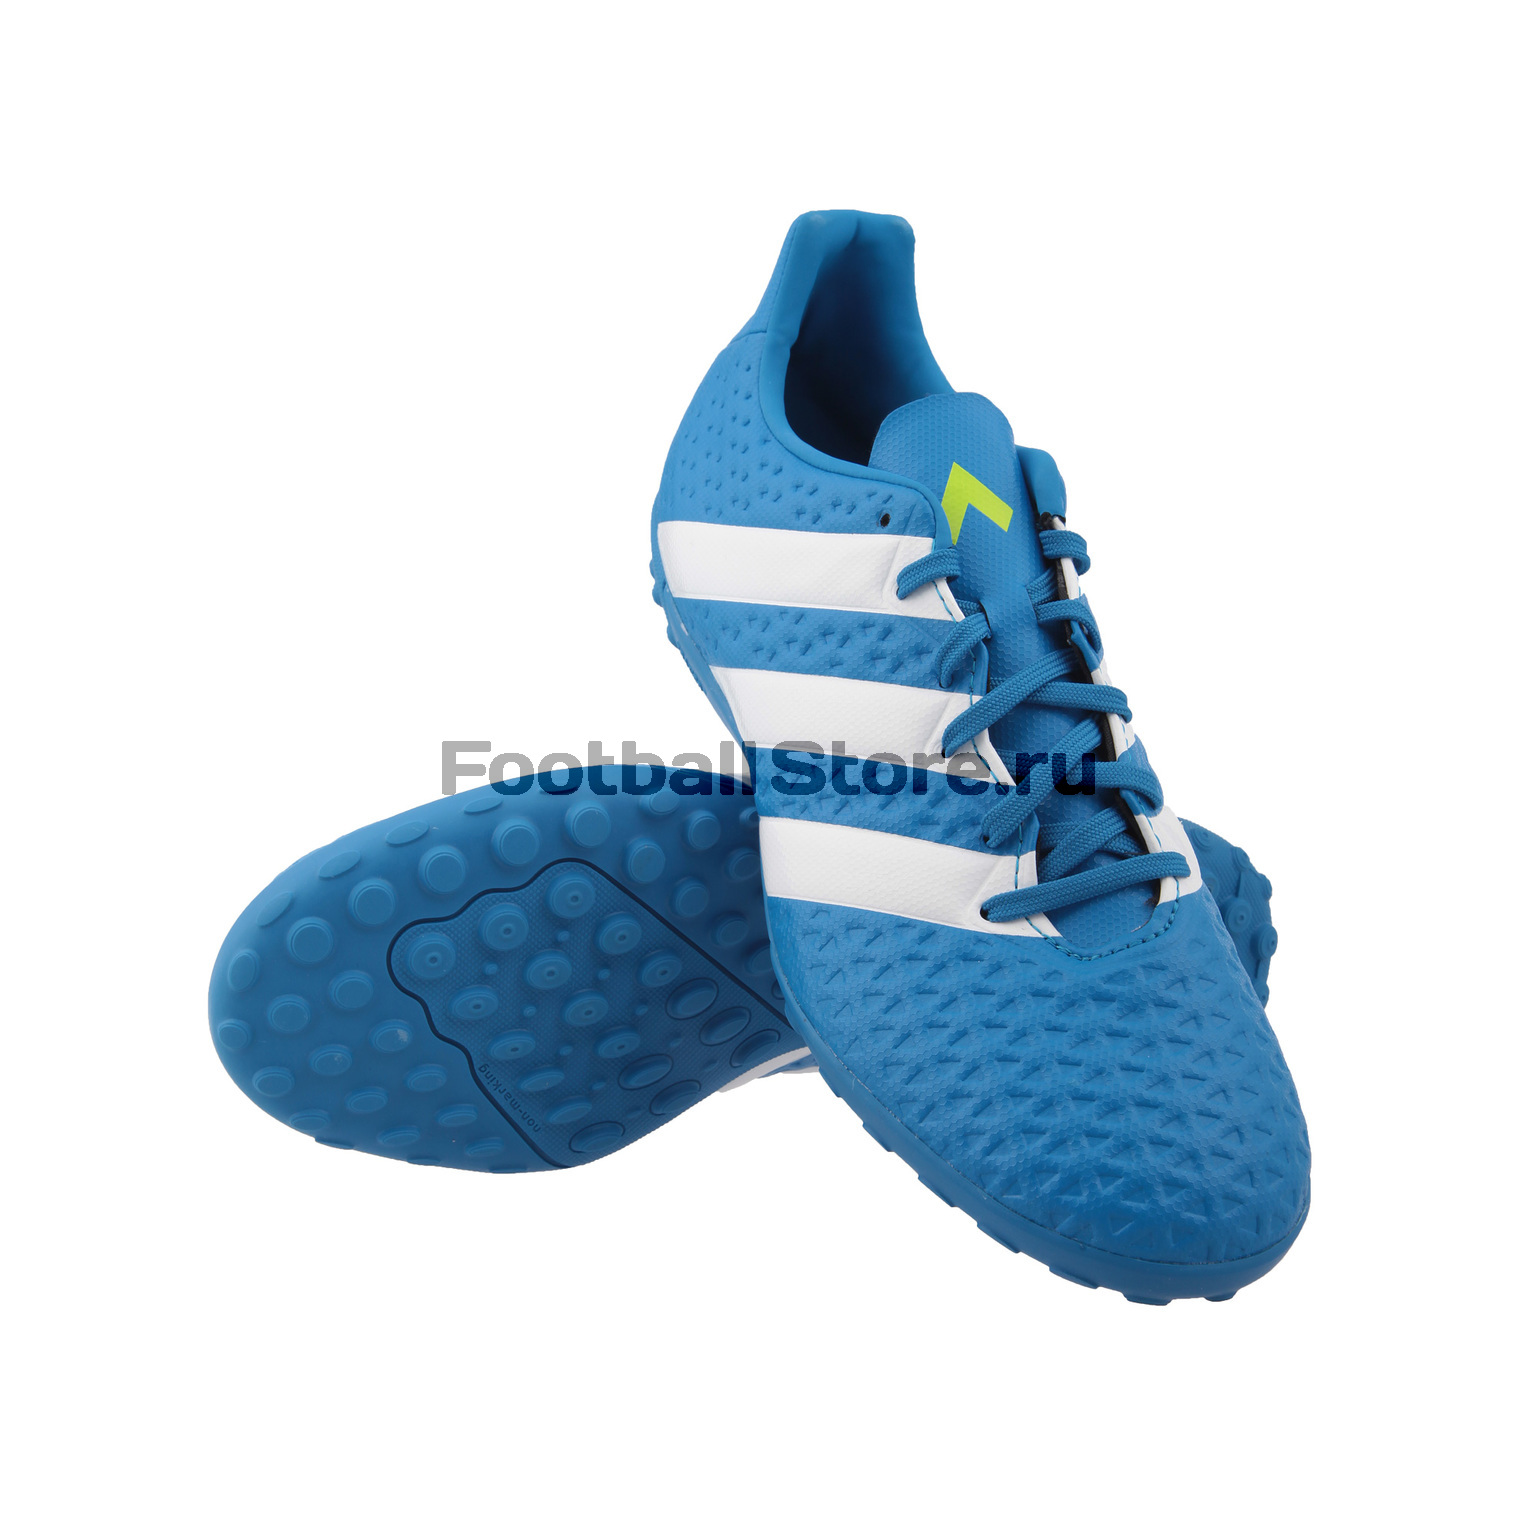 Diagnosticar Mejorar Anterior Шиповки Adidas ACE 16.4 TF AF5058 – купить в футбольном магазине  footballstore, цена, фото